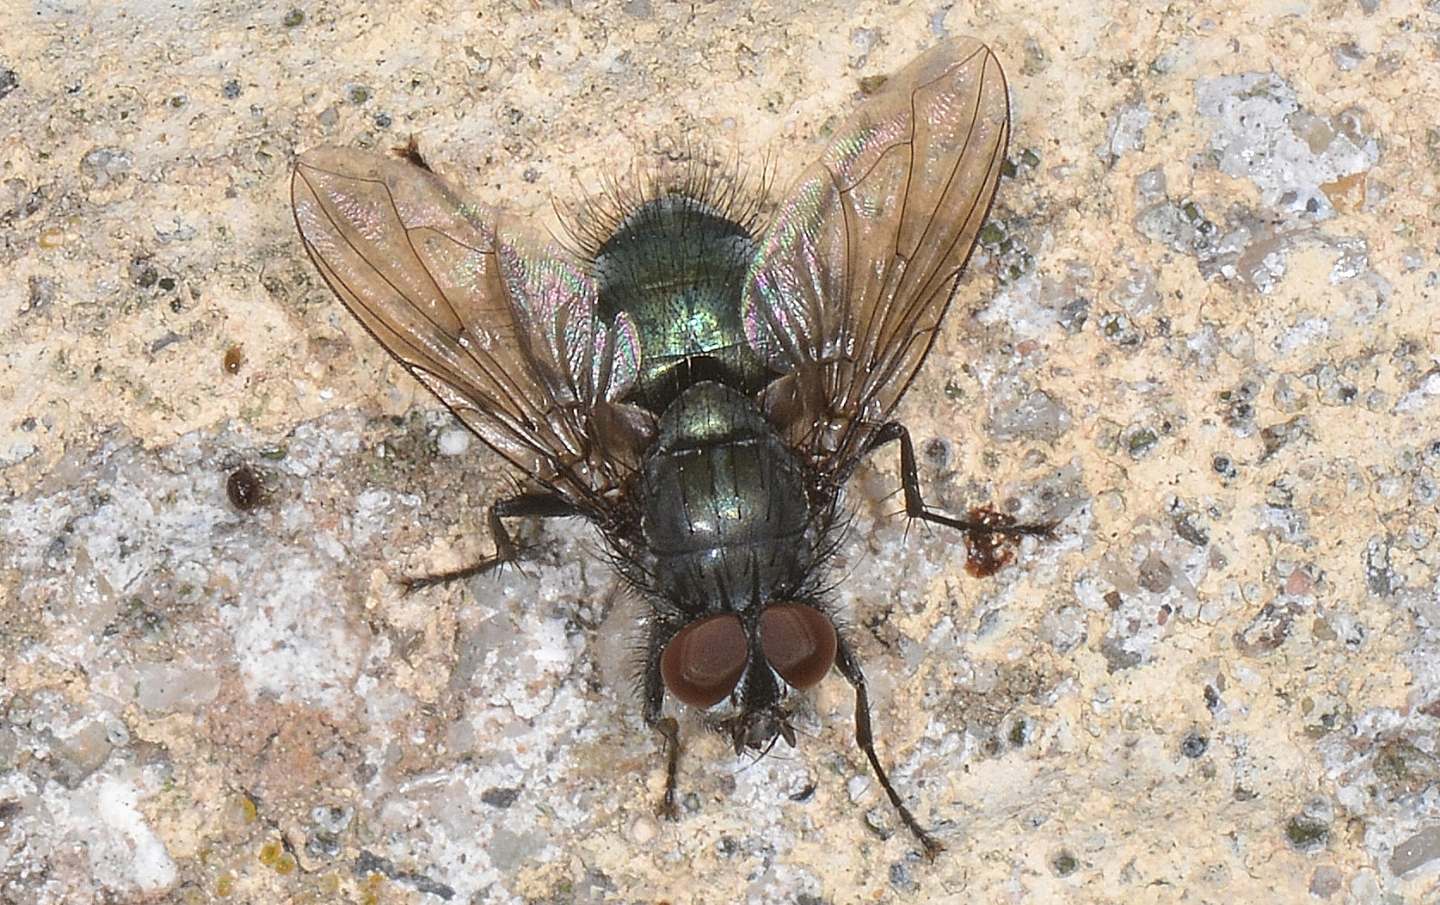 mosca verdina: Bellardia sp. (Calliphoridae)